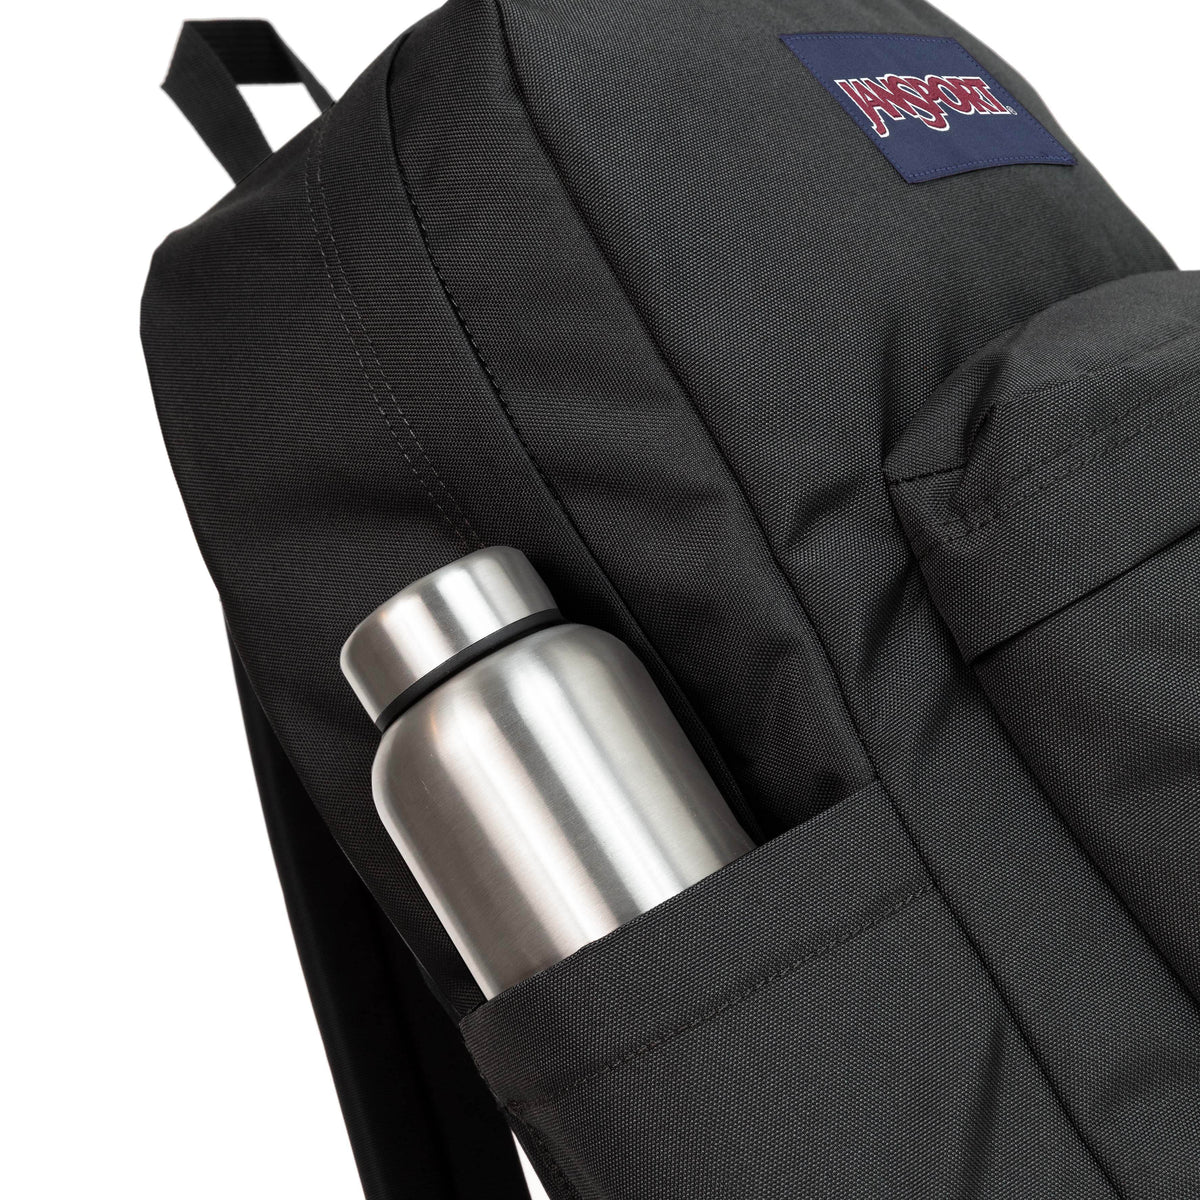 Jansport Superbreak Plus Backpack - Black